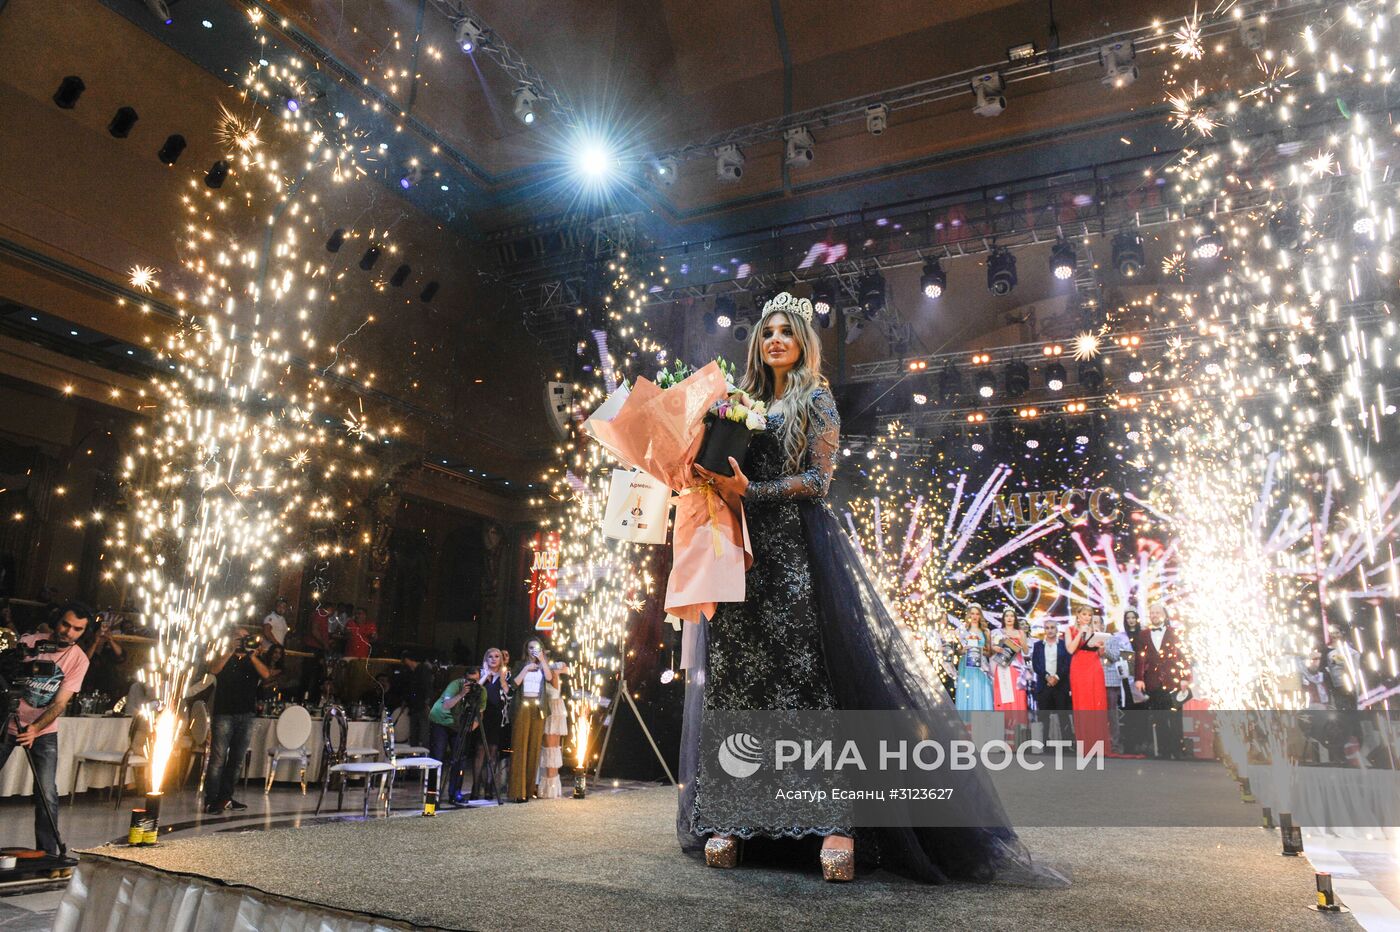 Финал конкурса красоты "Мисс СНГ" в Ереване